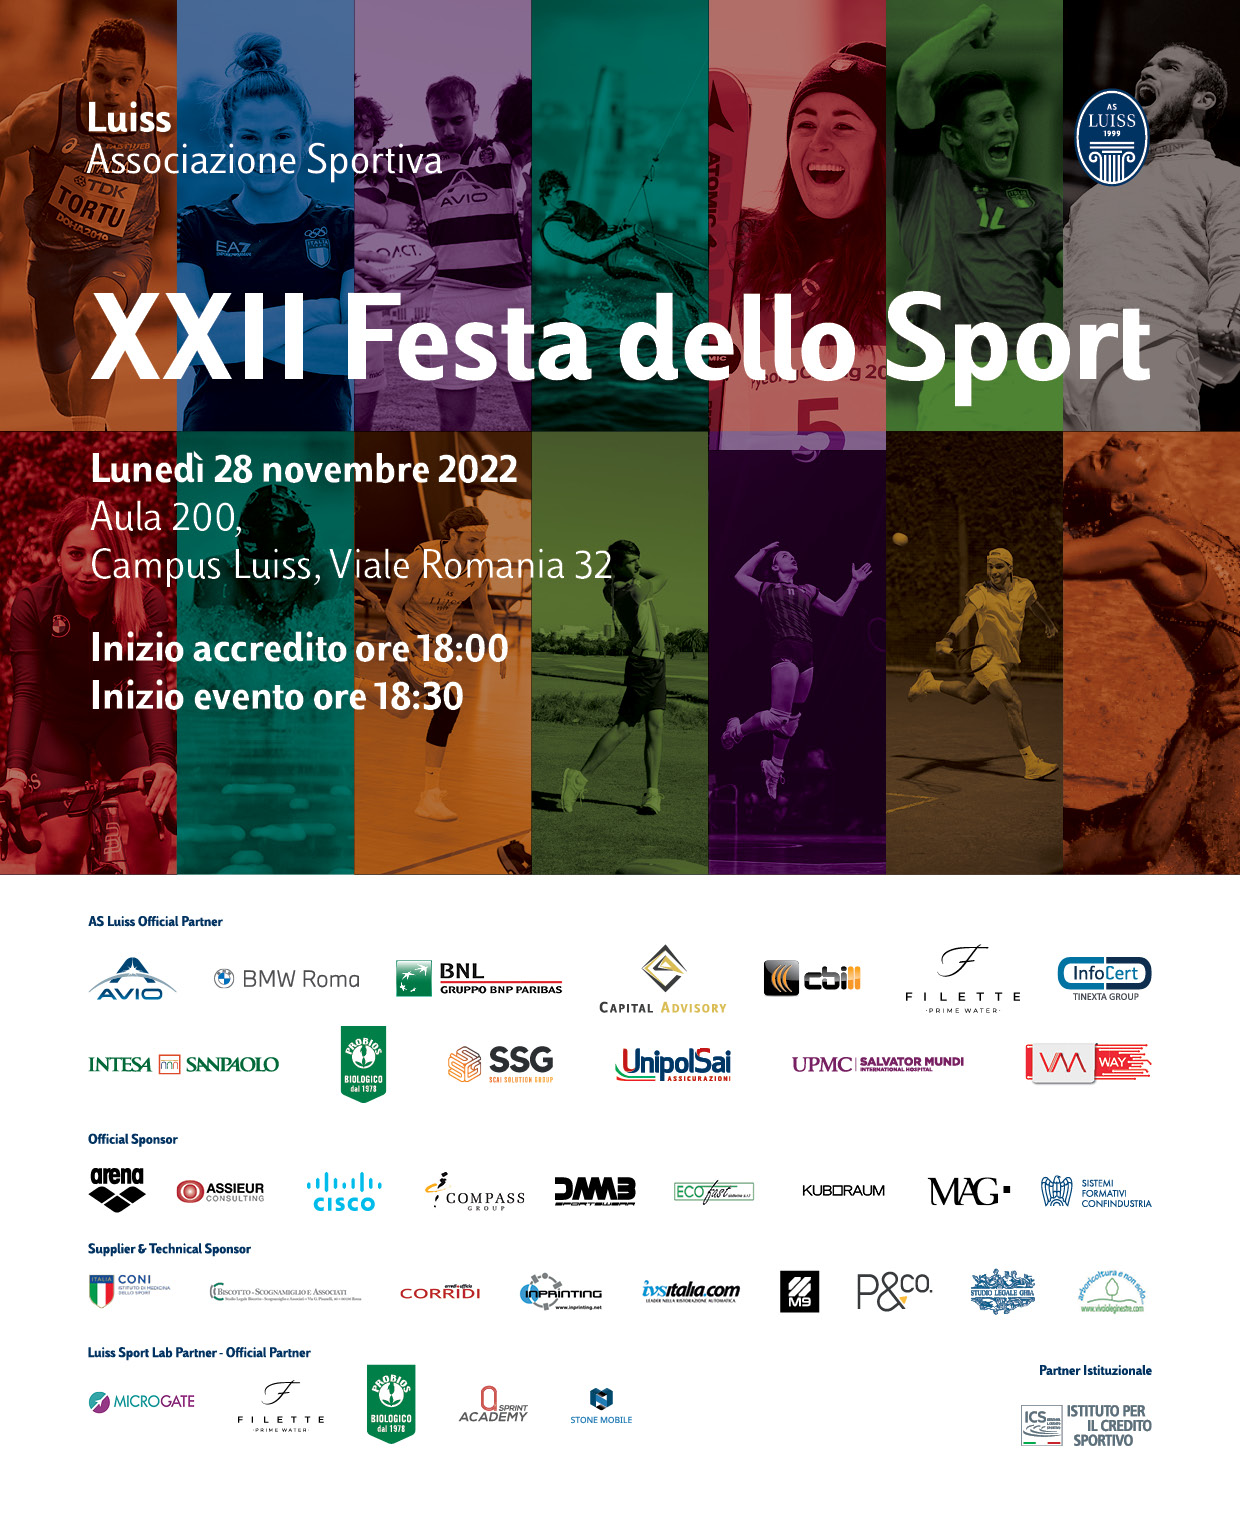 20221116_StD_XXII Festa dello Sport_V10